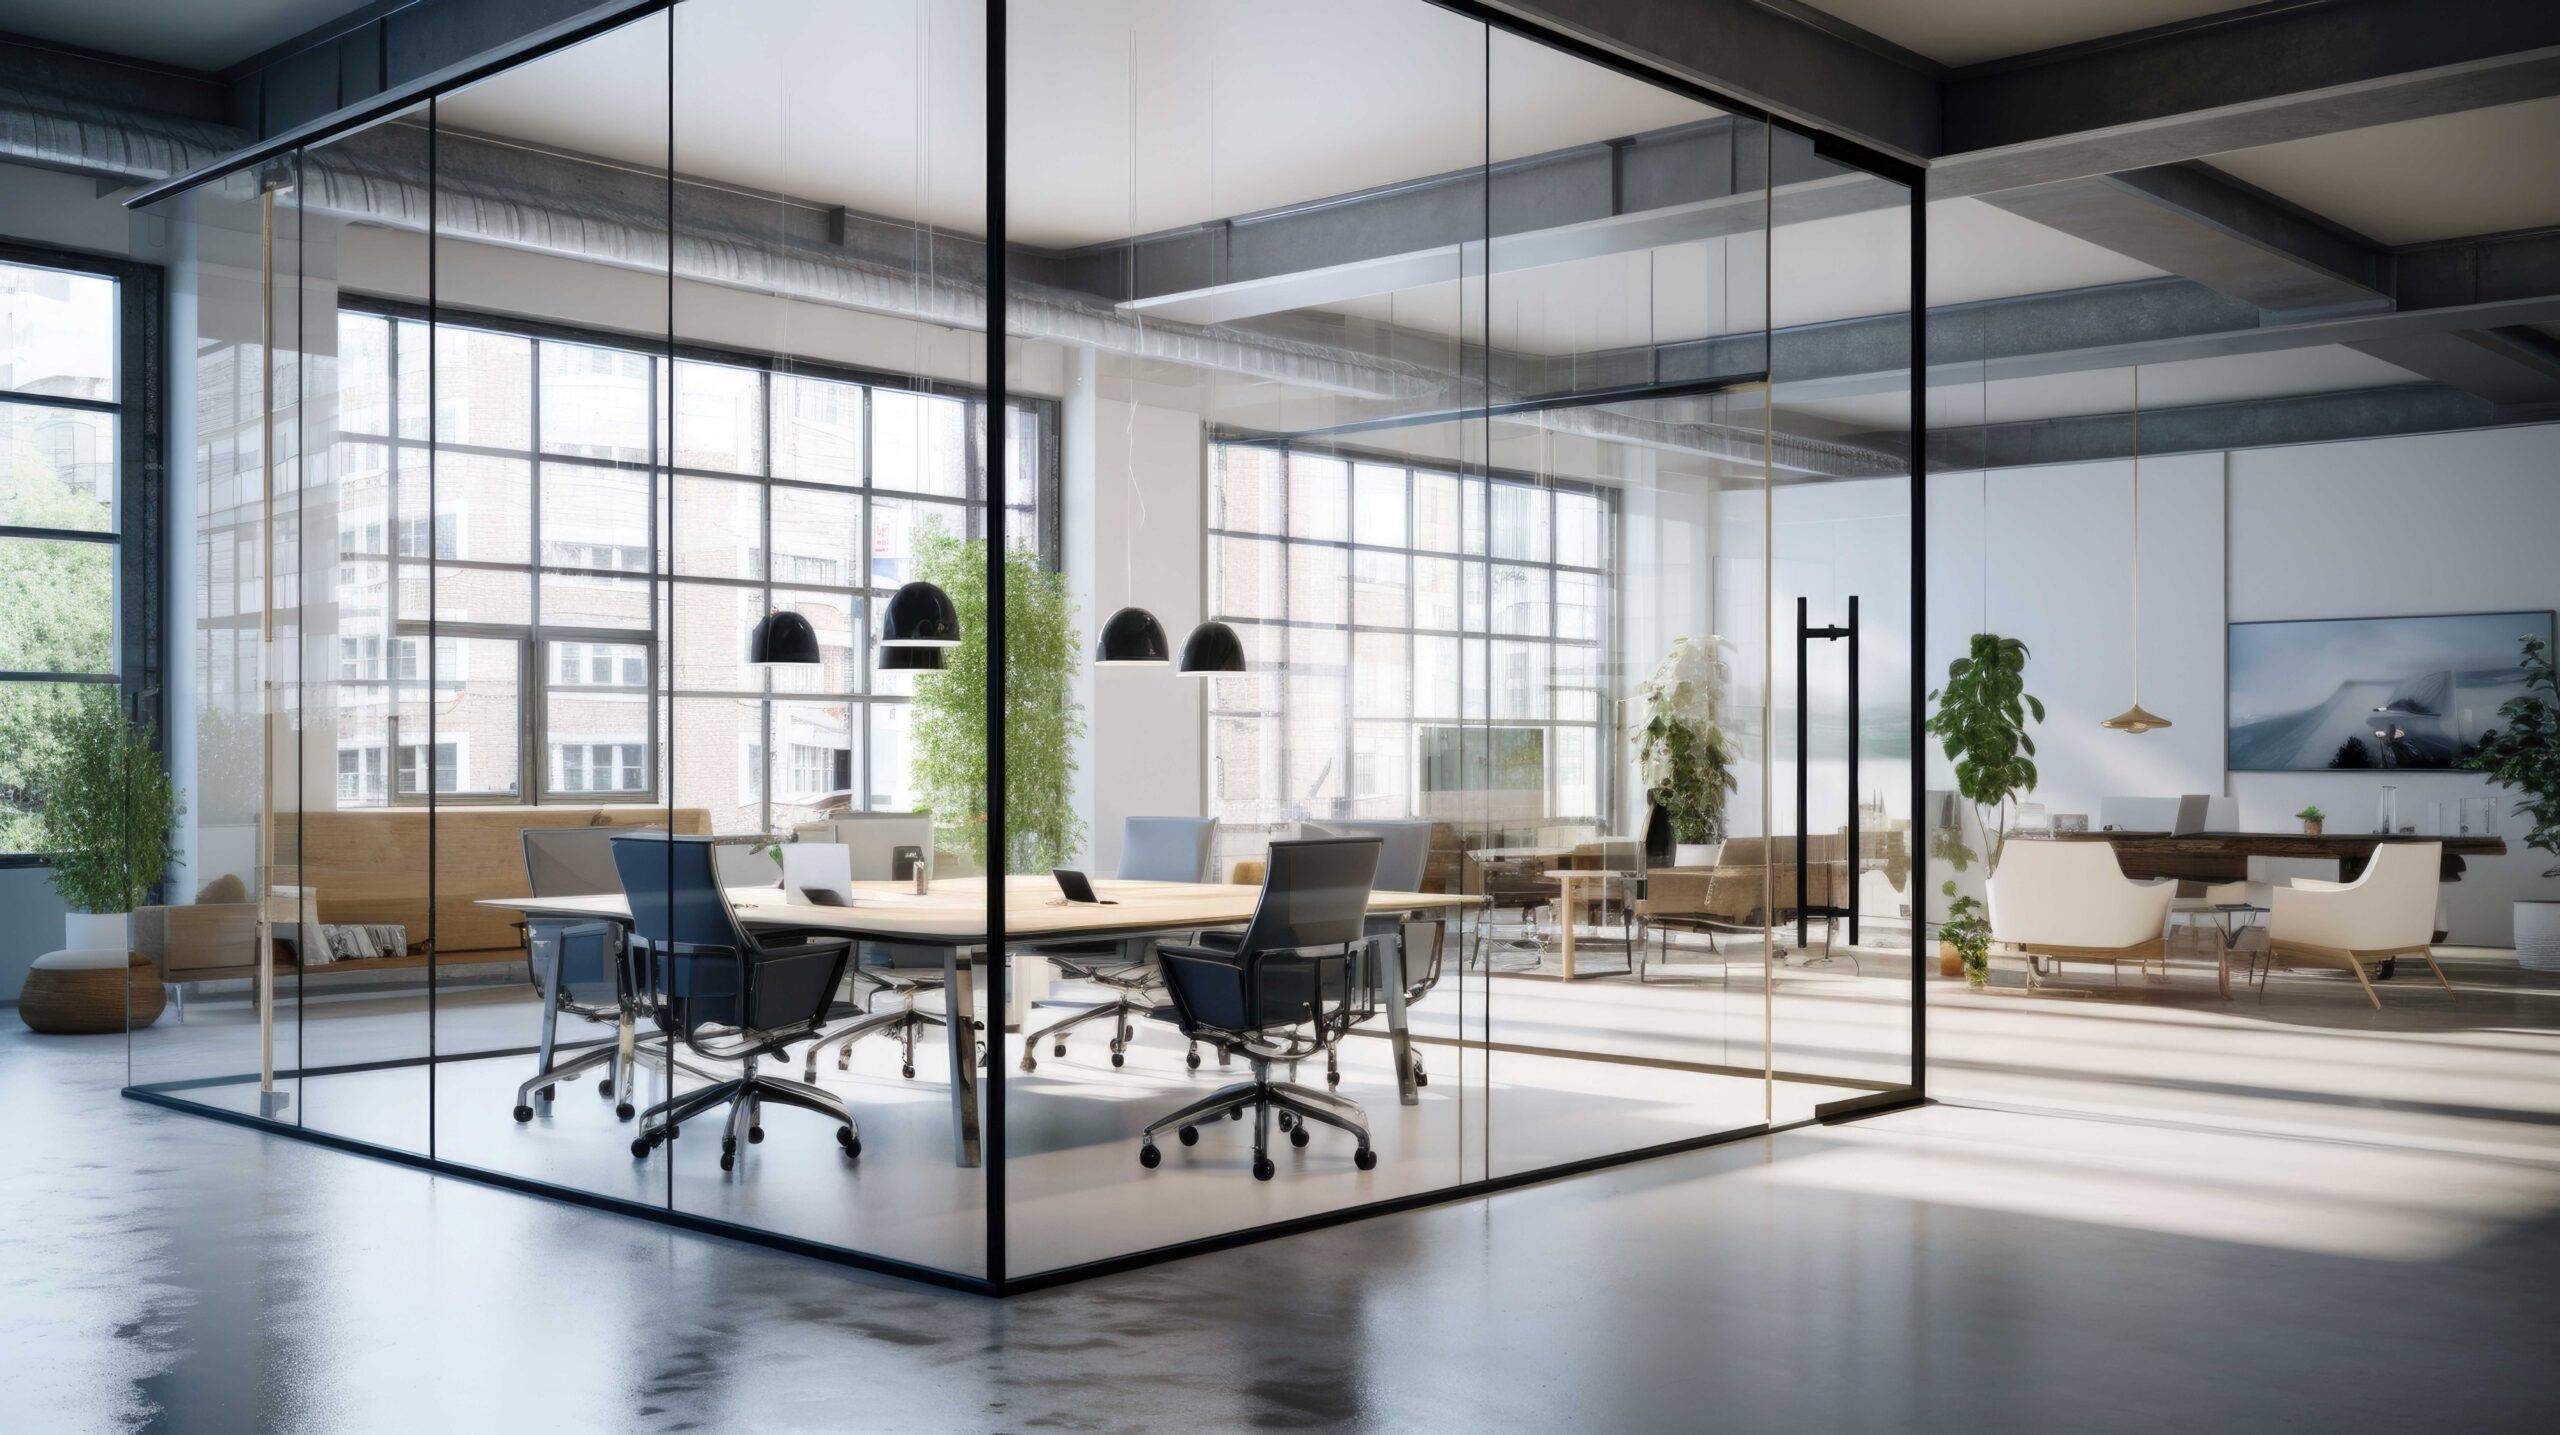 Modernes und stilvolles Büro mit transparenten Glaswänden. Professionelles Arbeitsumfeld, Innenarchitektur, in der Ästhetik mit Funktionalität kombiniert wird und so zu Produktivität und Komfort beiträgt